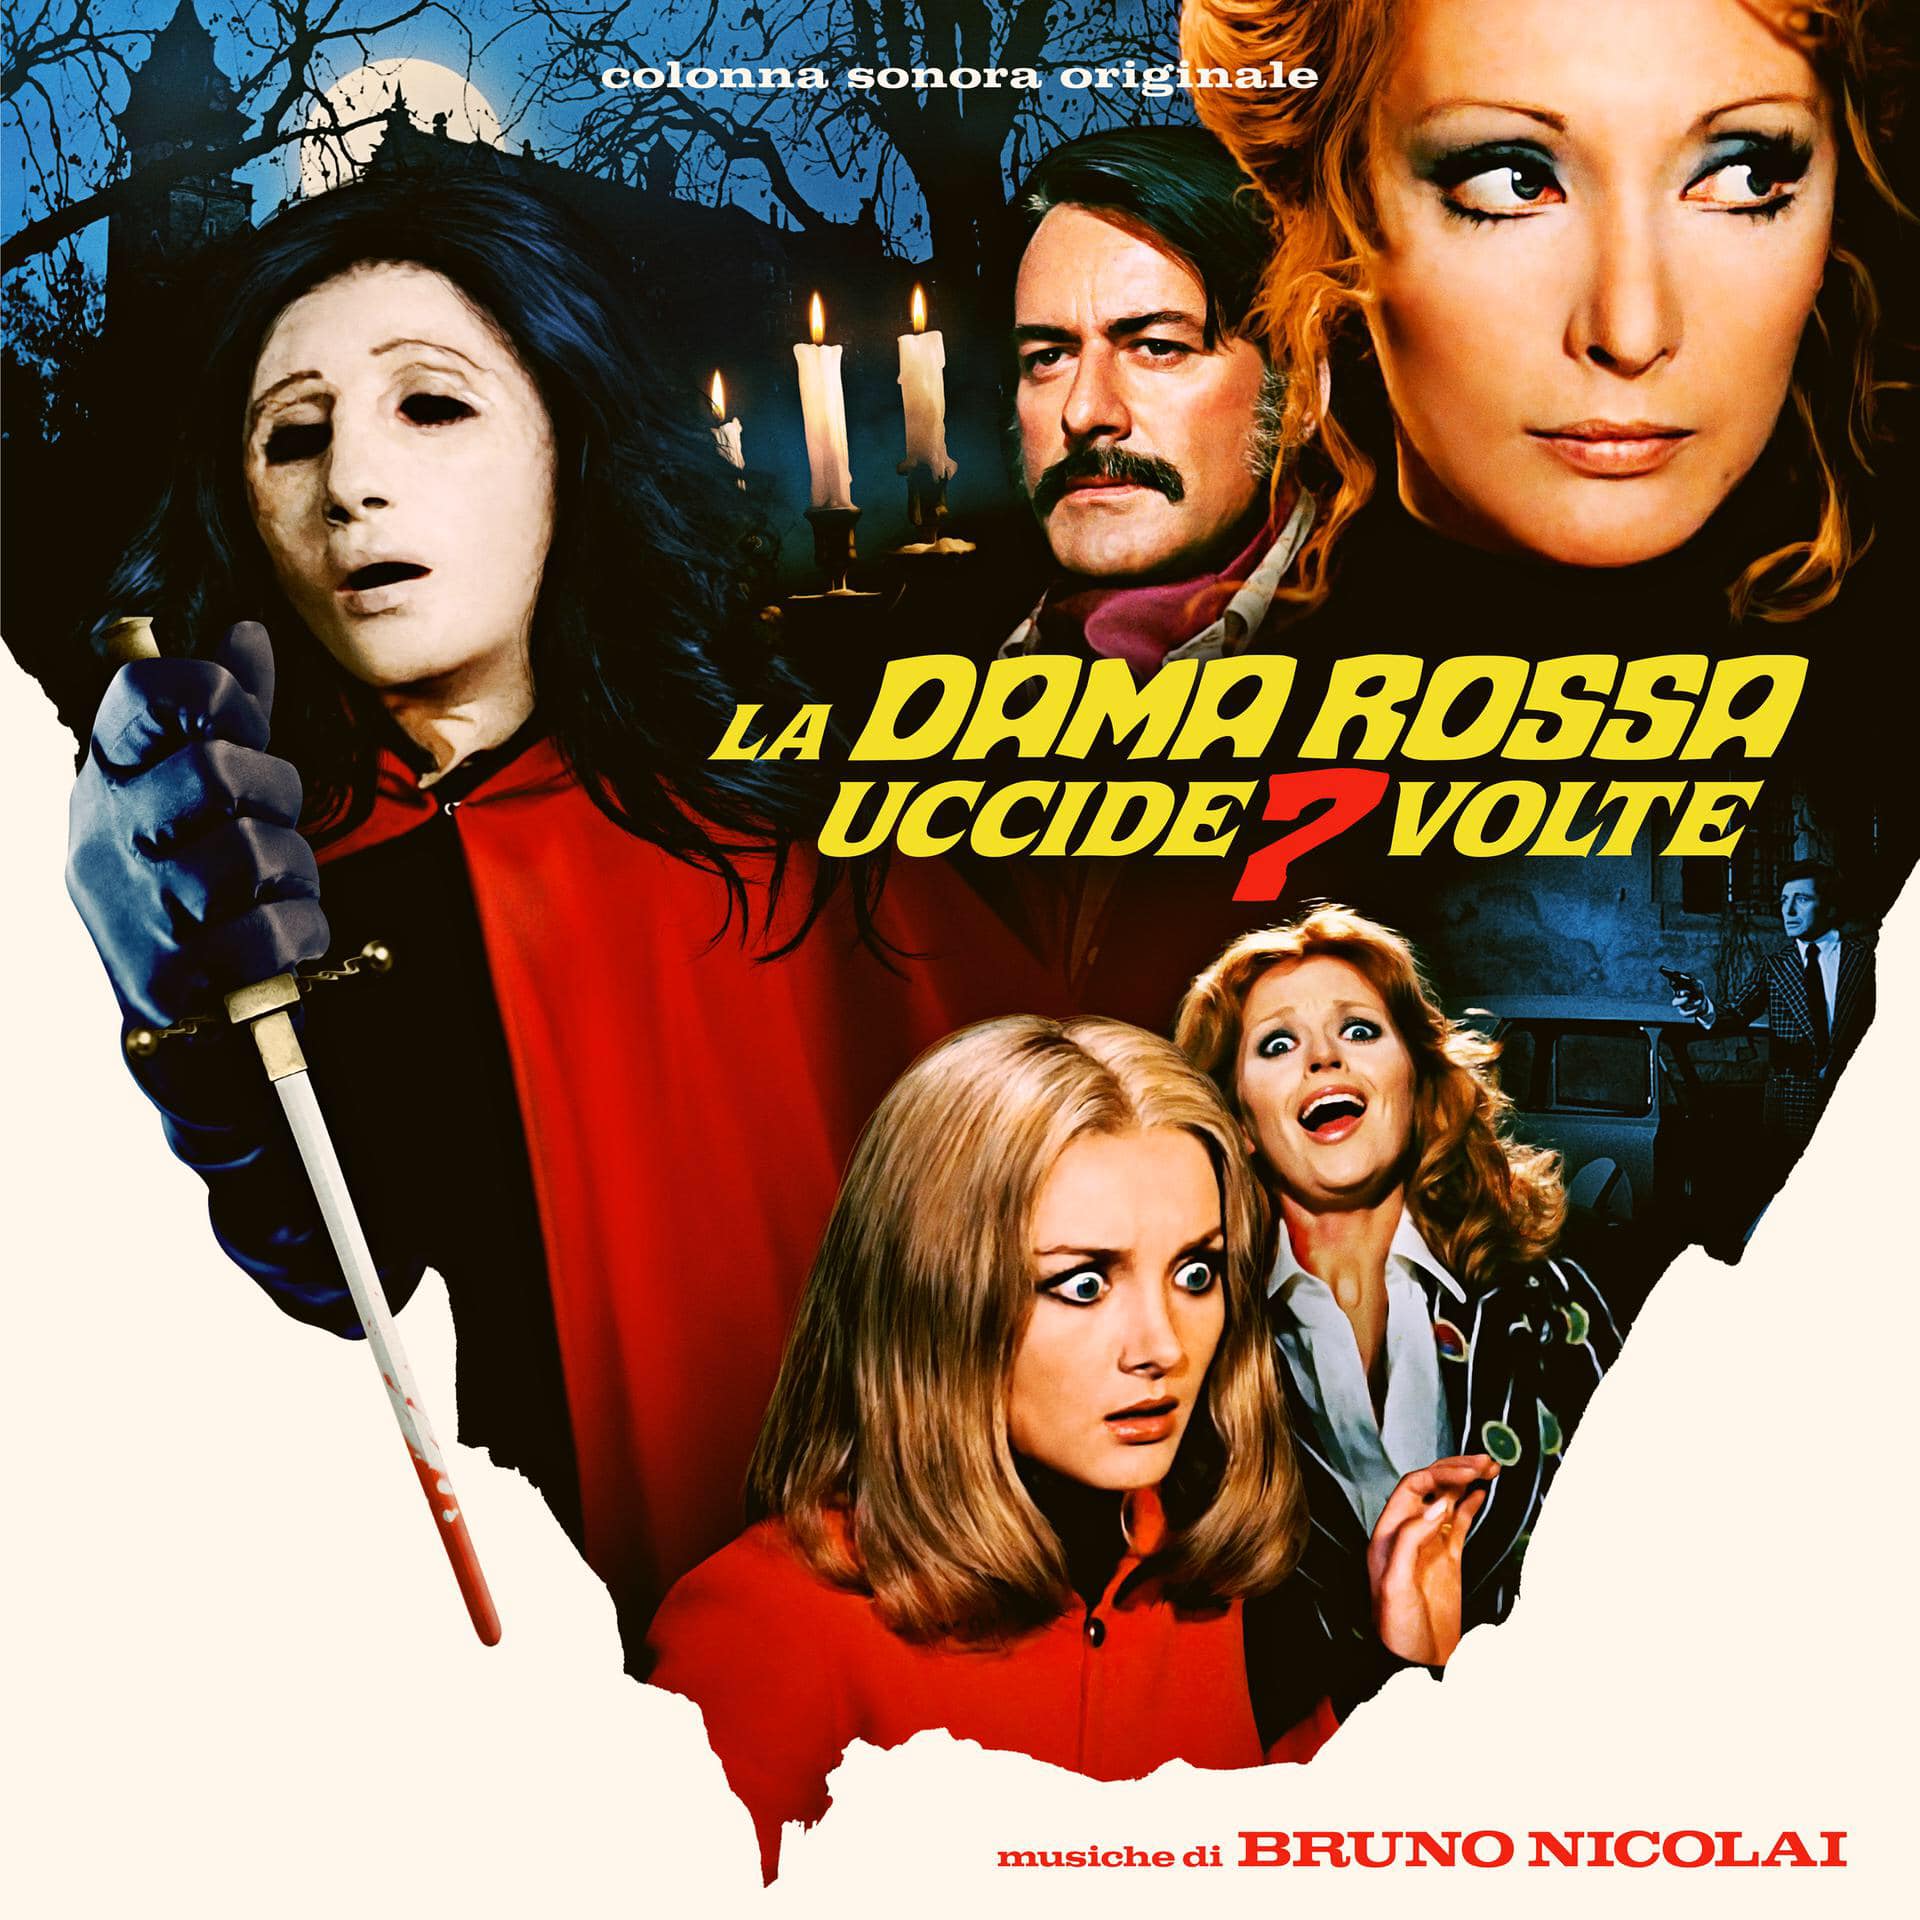 PAURA torna con  "La Dama Rossa Uccide 7 Volte" La ricercatissima colonna sonora horror, in uscita come Red Vinyl 2LP Limited Edition, distribuita da Decca Records.